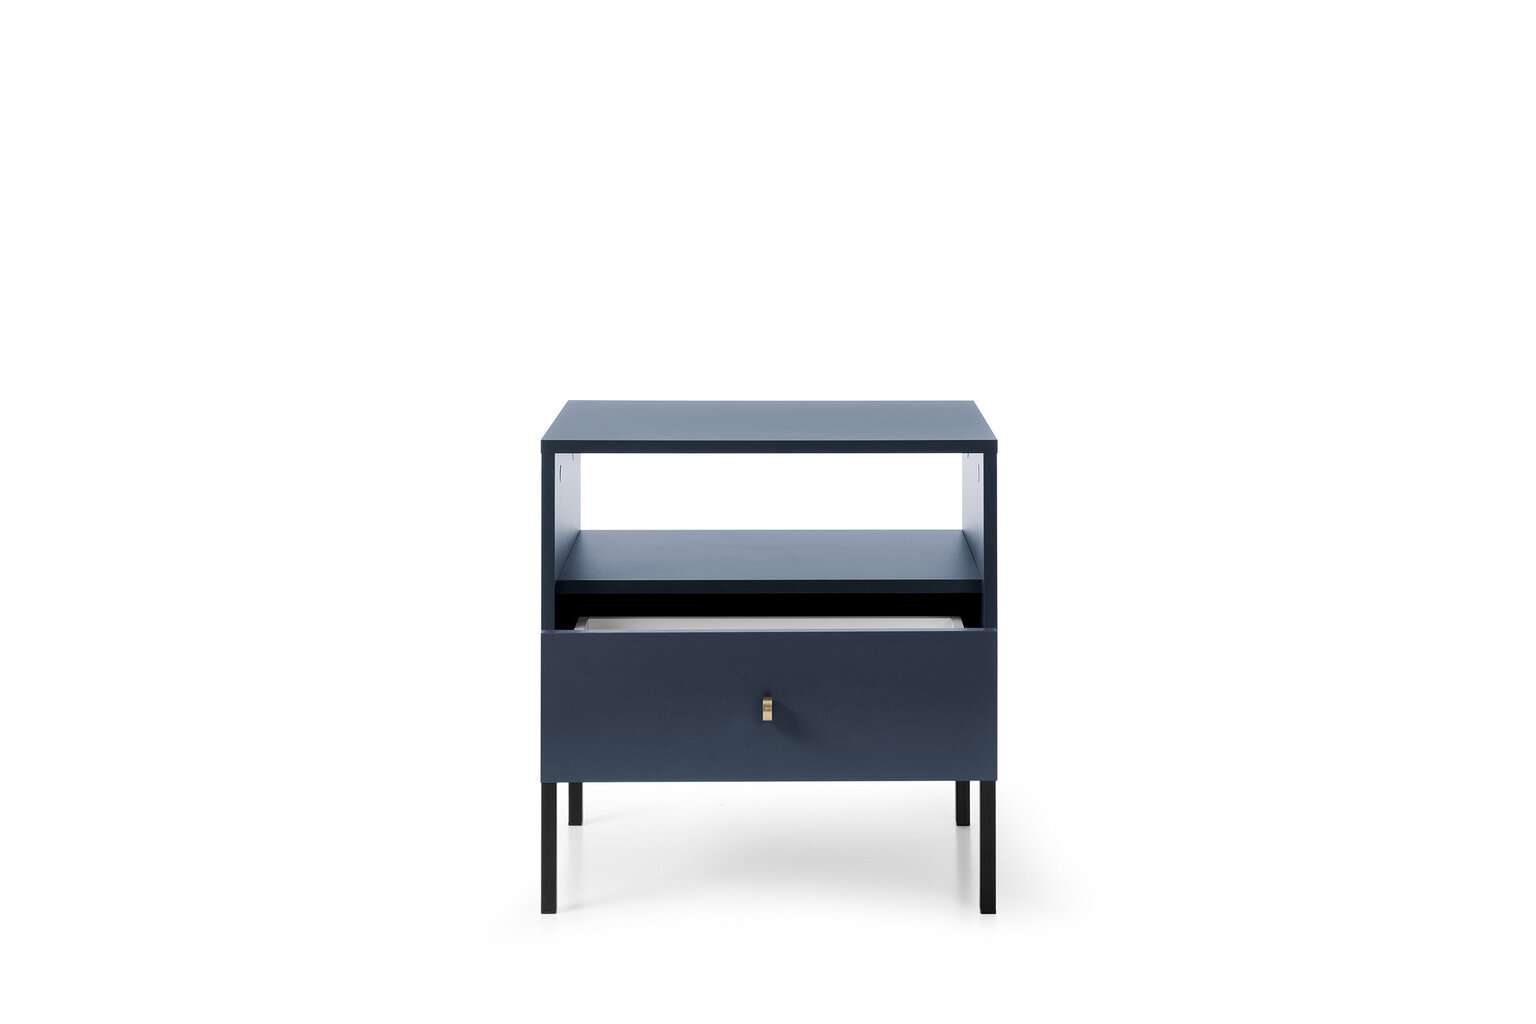 Spintelė prie lovos AKL Furniture Mono MS54, mėlyna kaina ir informacija | Spintelės prie lovos | pigu.lt